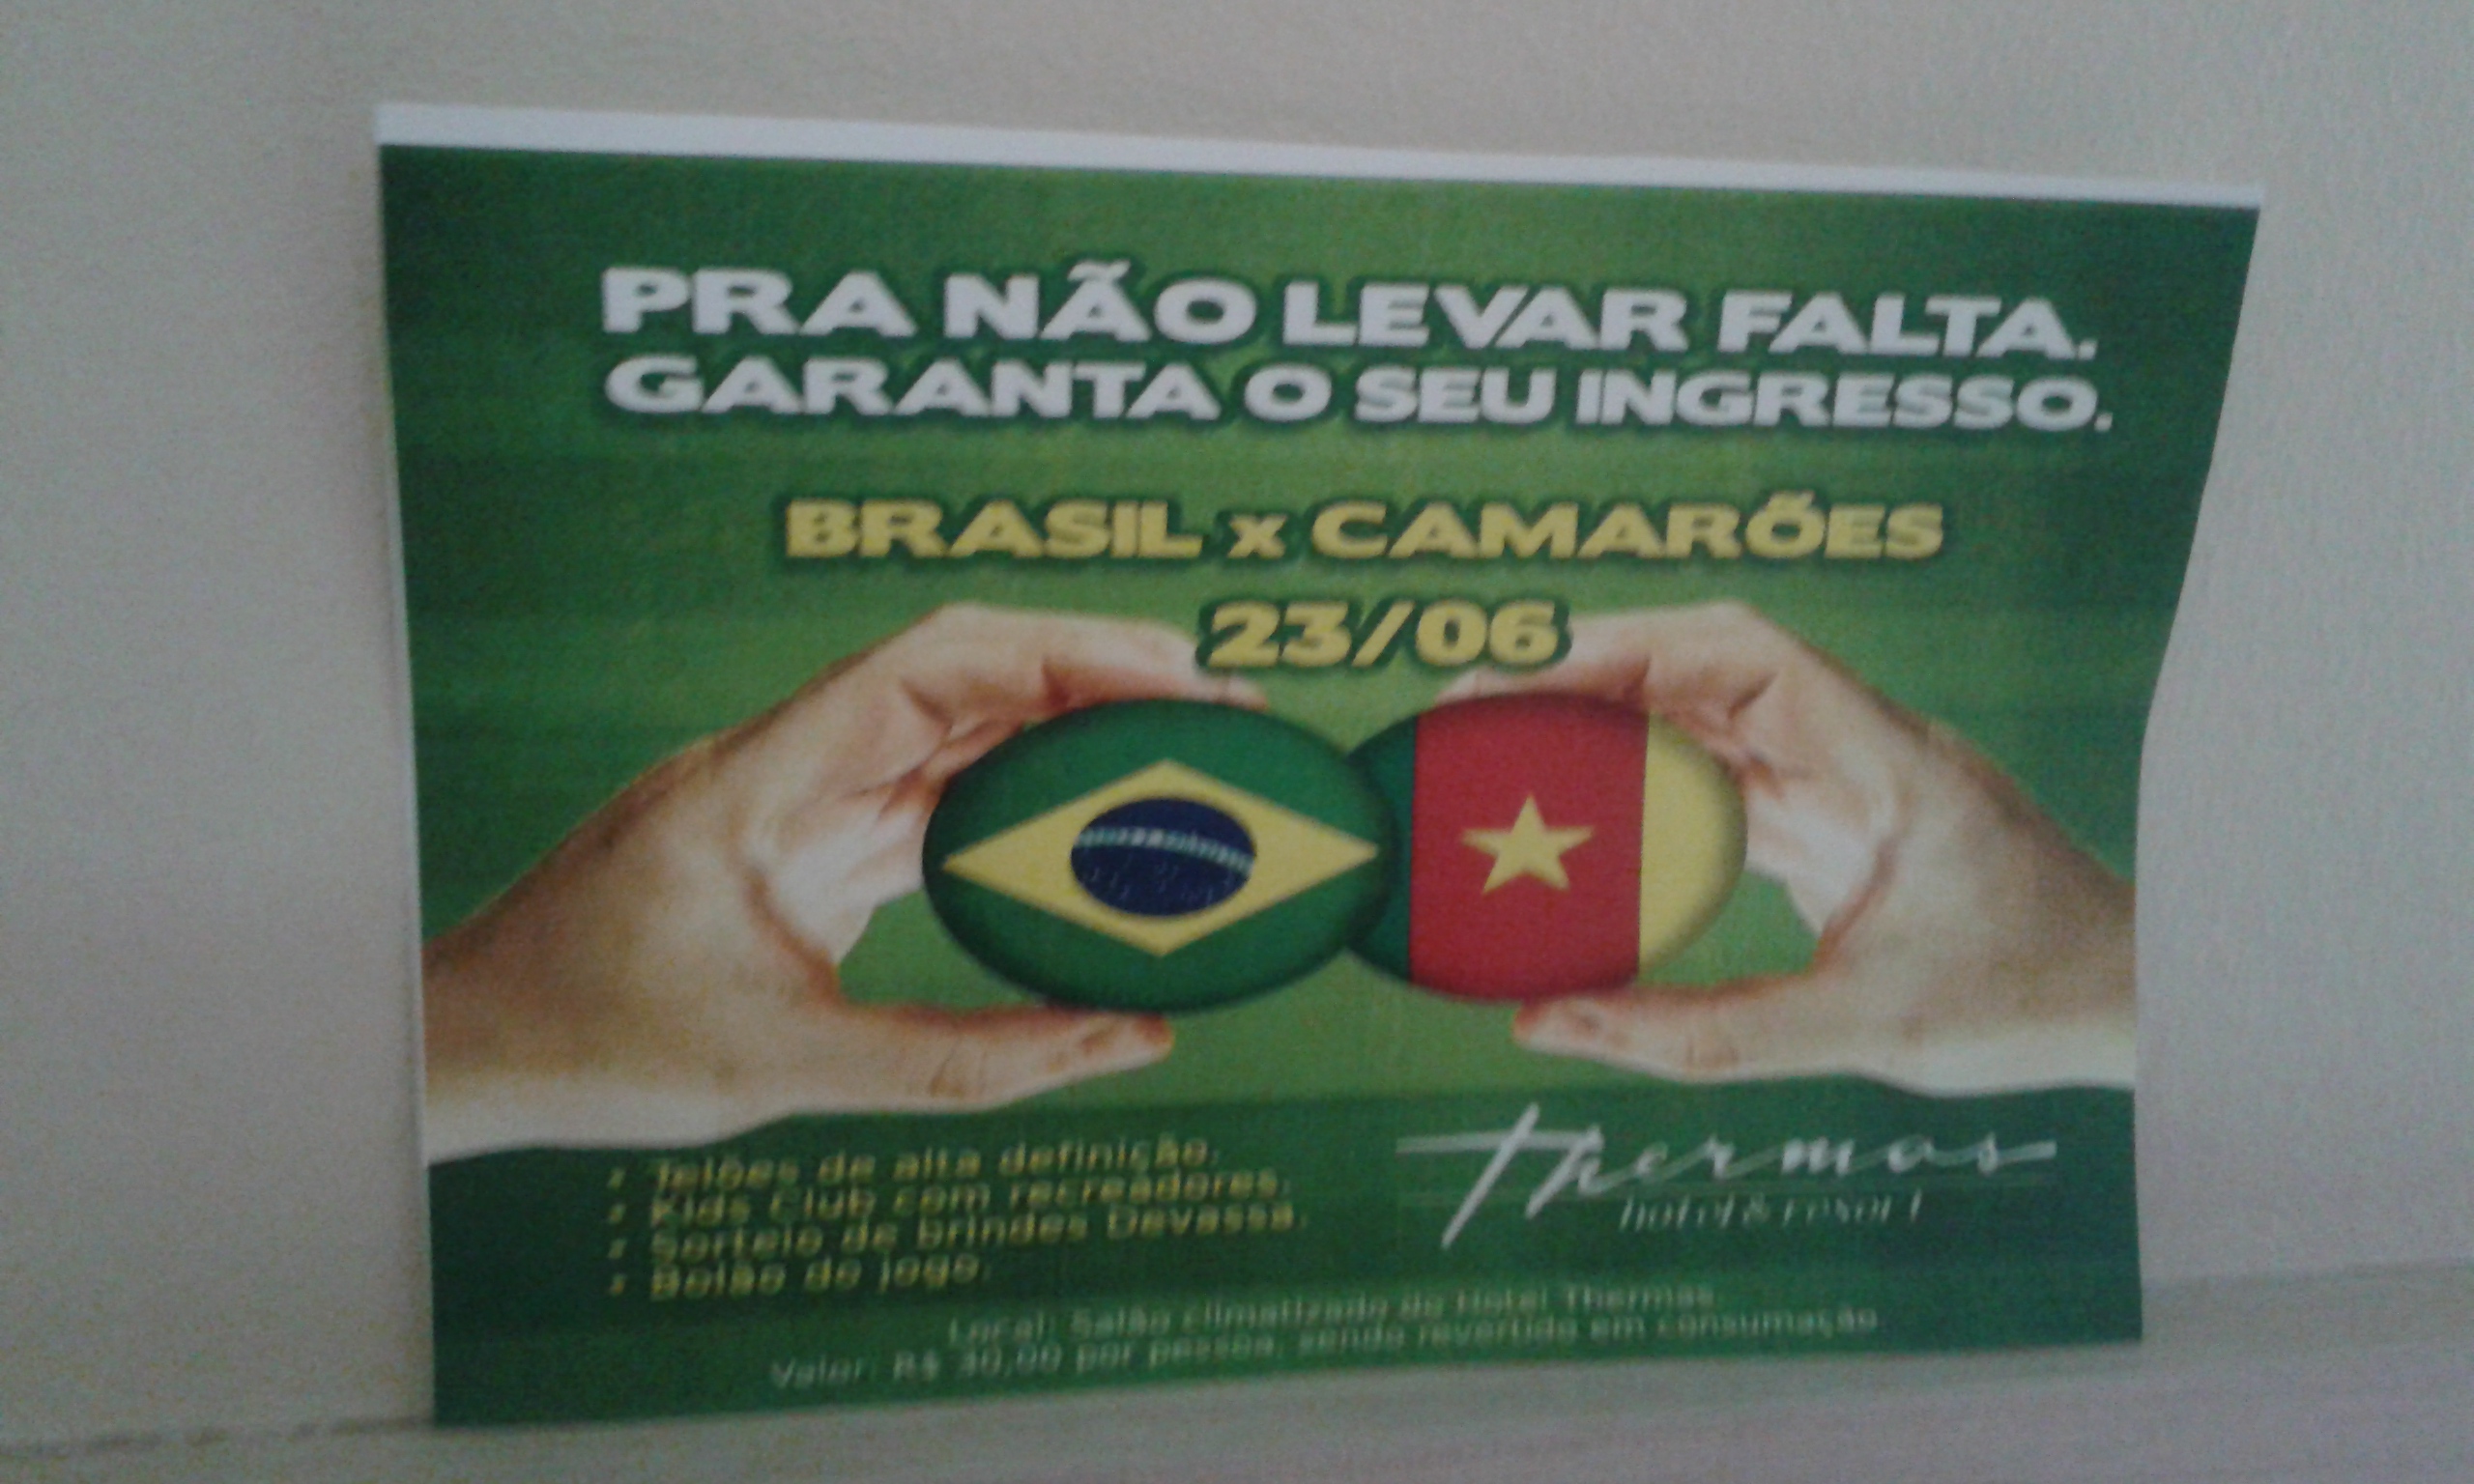 Le ticket nécessaire pour regarder le match de foot Brésil - Cameroun au hôtel Thermas Mossoró. (Crédit photo: Fabio Santana).